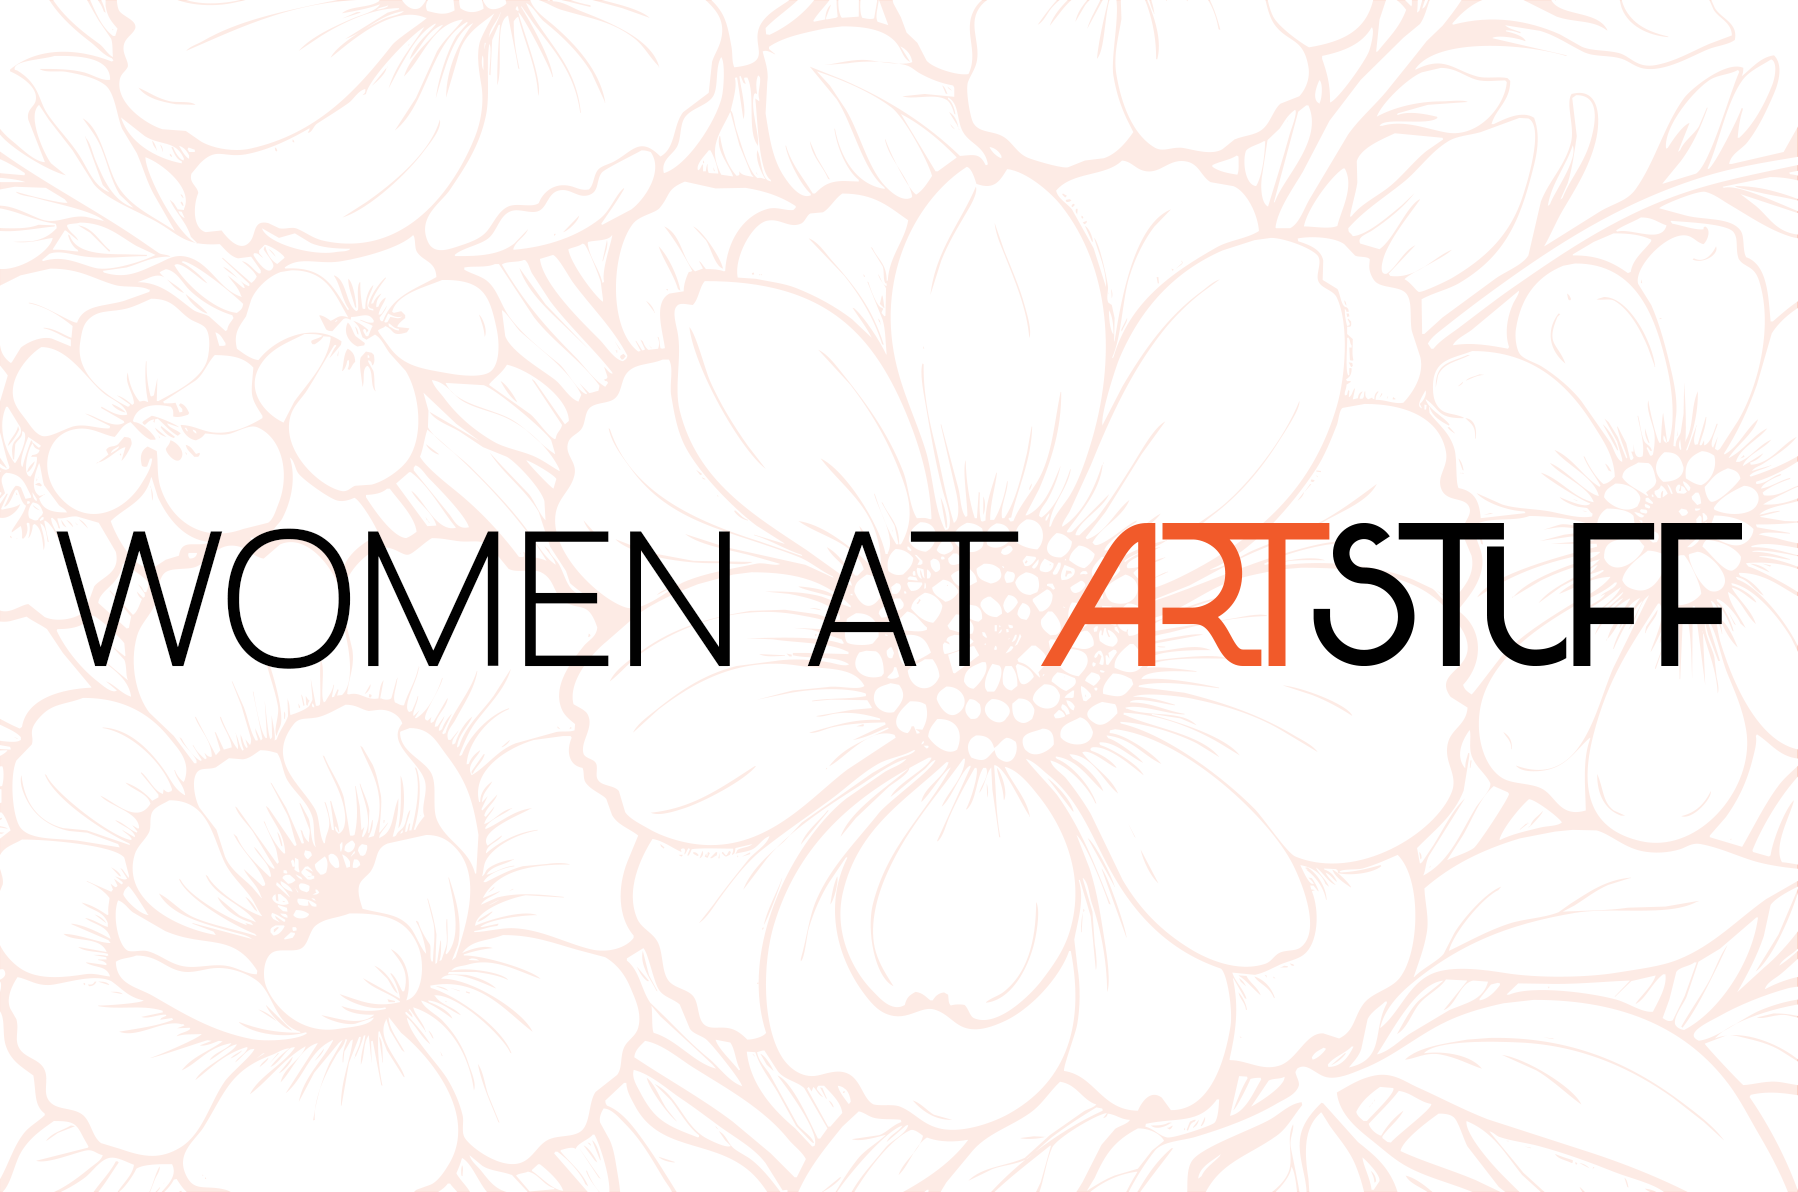 Women at Artstuff: Phụ nữ ở bất kỳ độ tuổi nào cũng có những khát vọng và thành công riêng